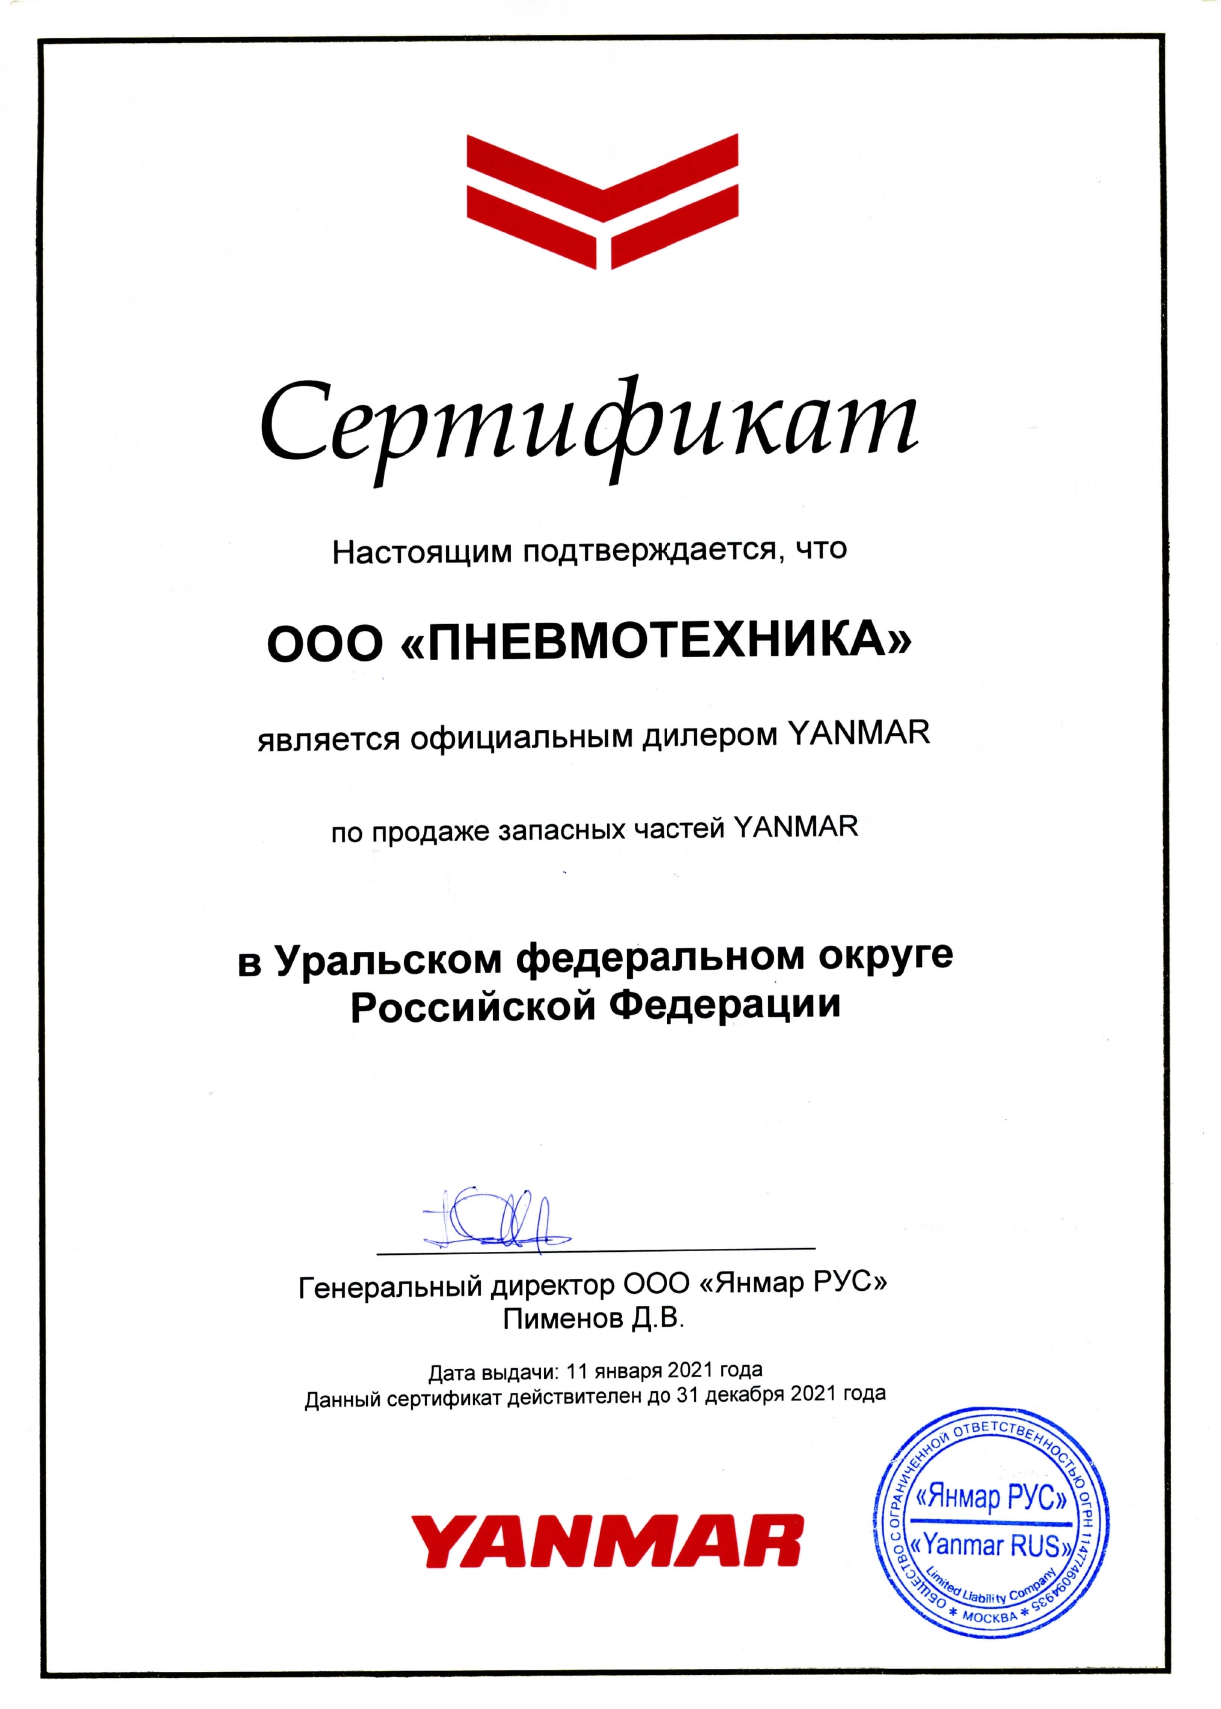 Сертификат, подтверждающий, что ООО «Пневмотехника» является официальным дилером YANMAR по продаже запасных частей YANMAR в УрФО.